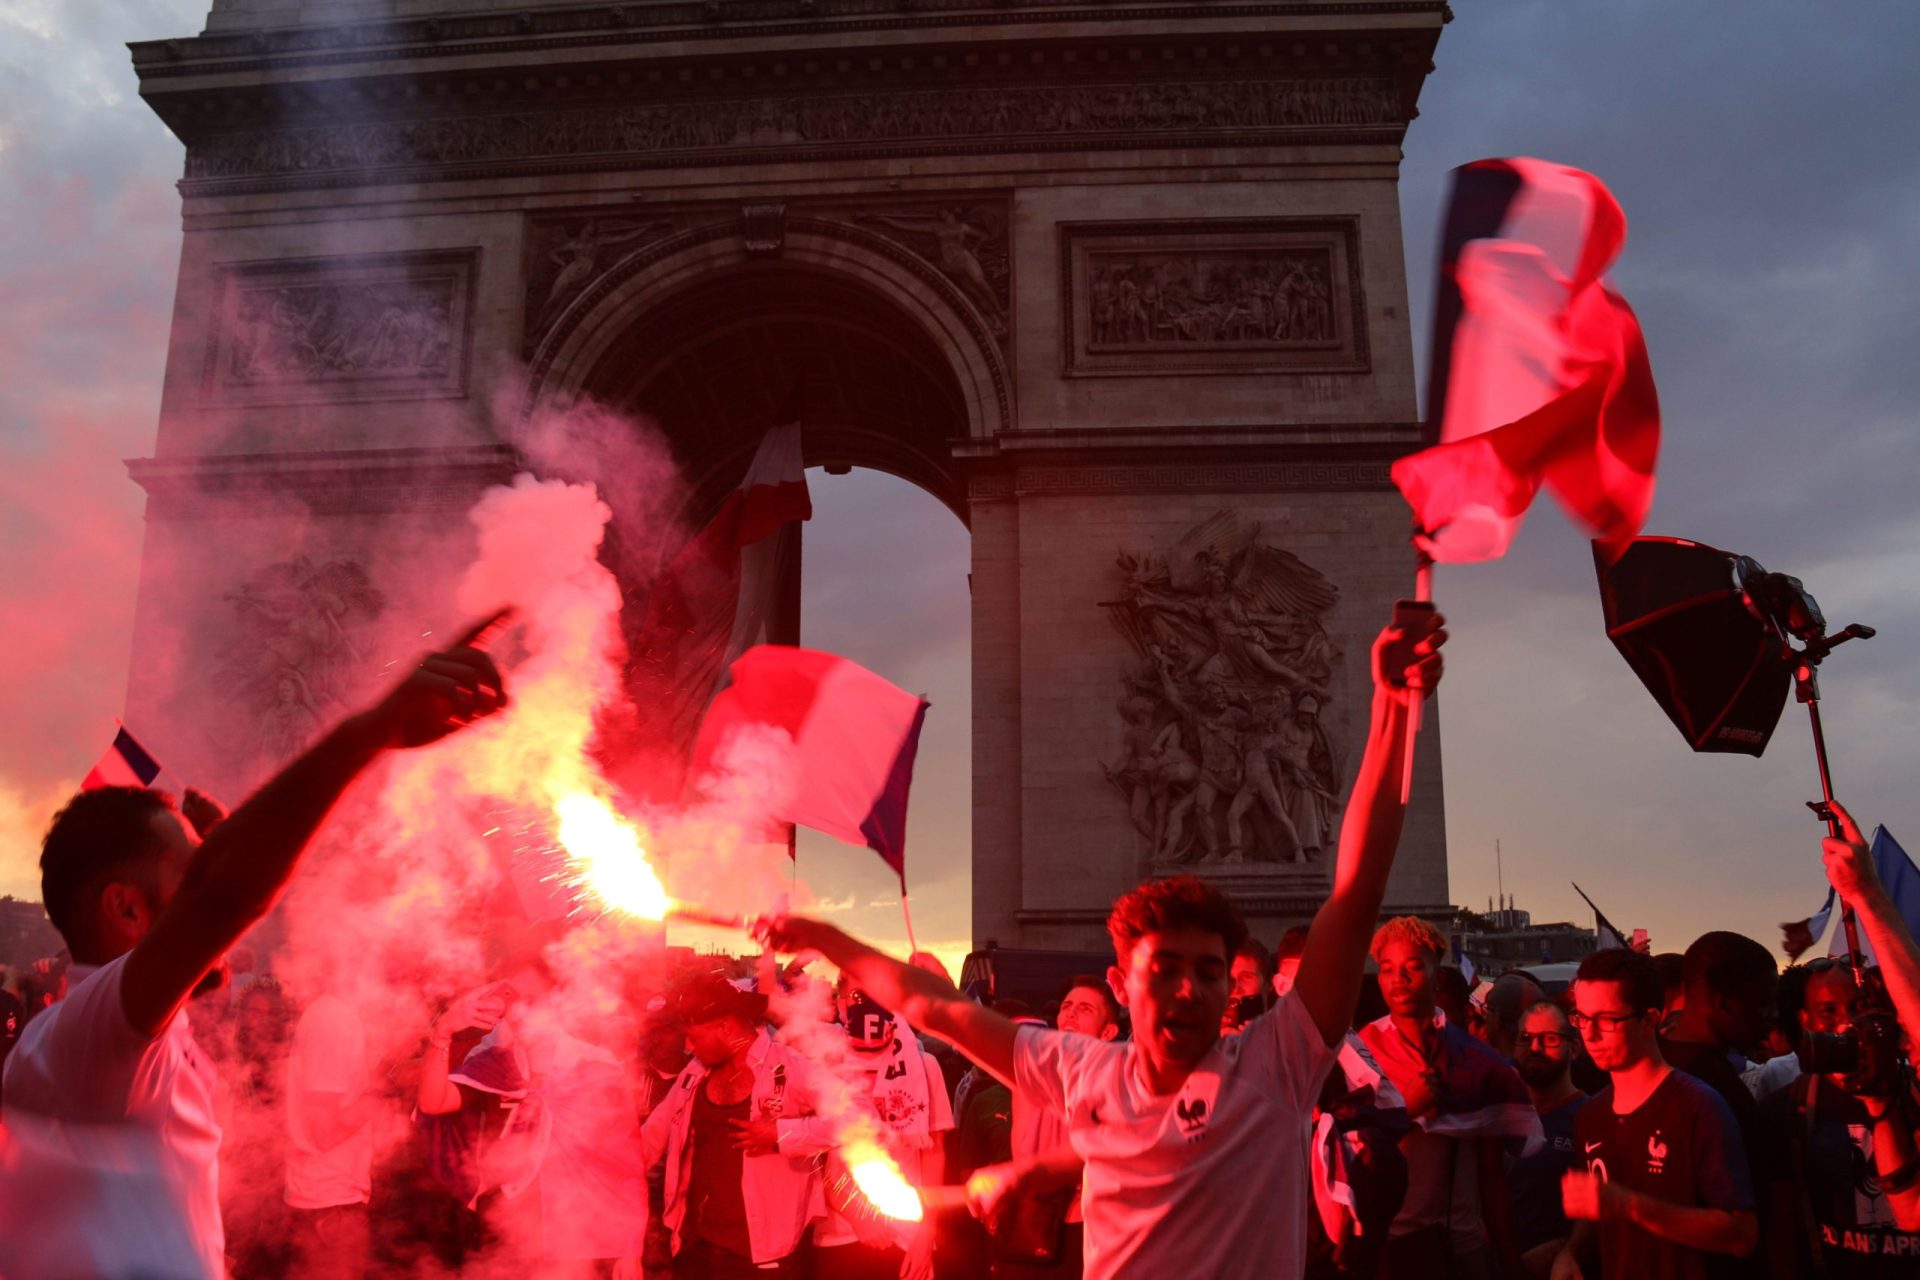 Mundial 2018. Celebrações em França marcadas por adeptos violentos, detenções e mortes | Vídeos